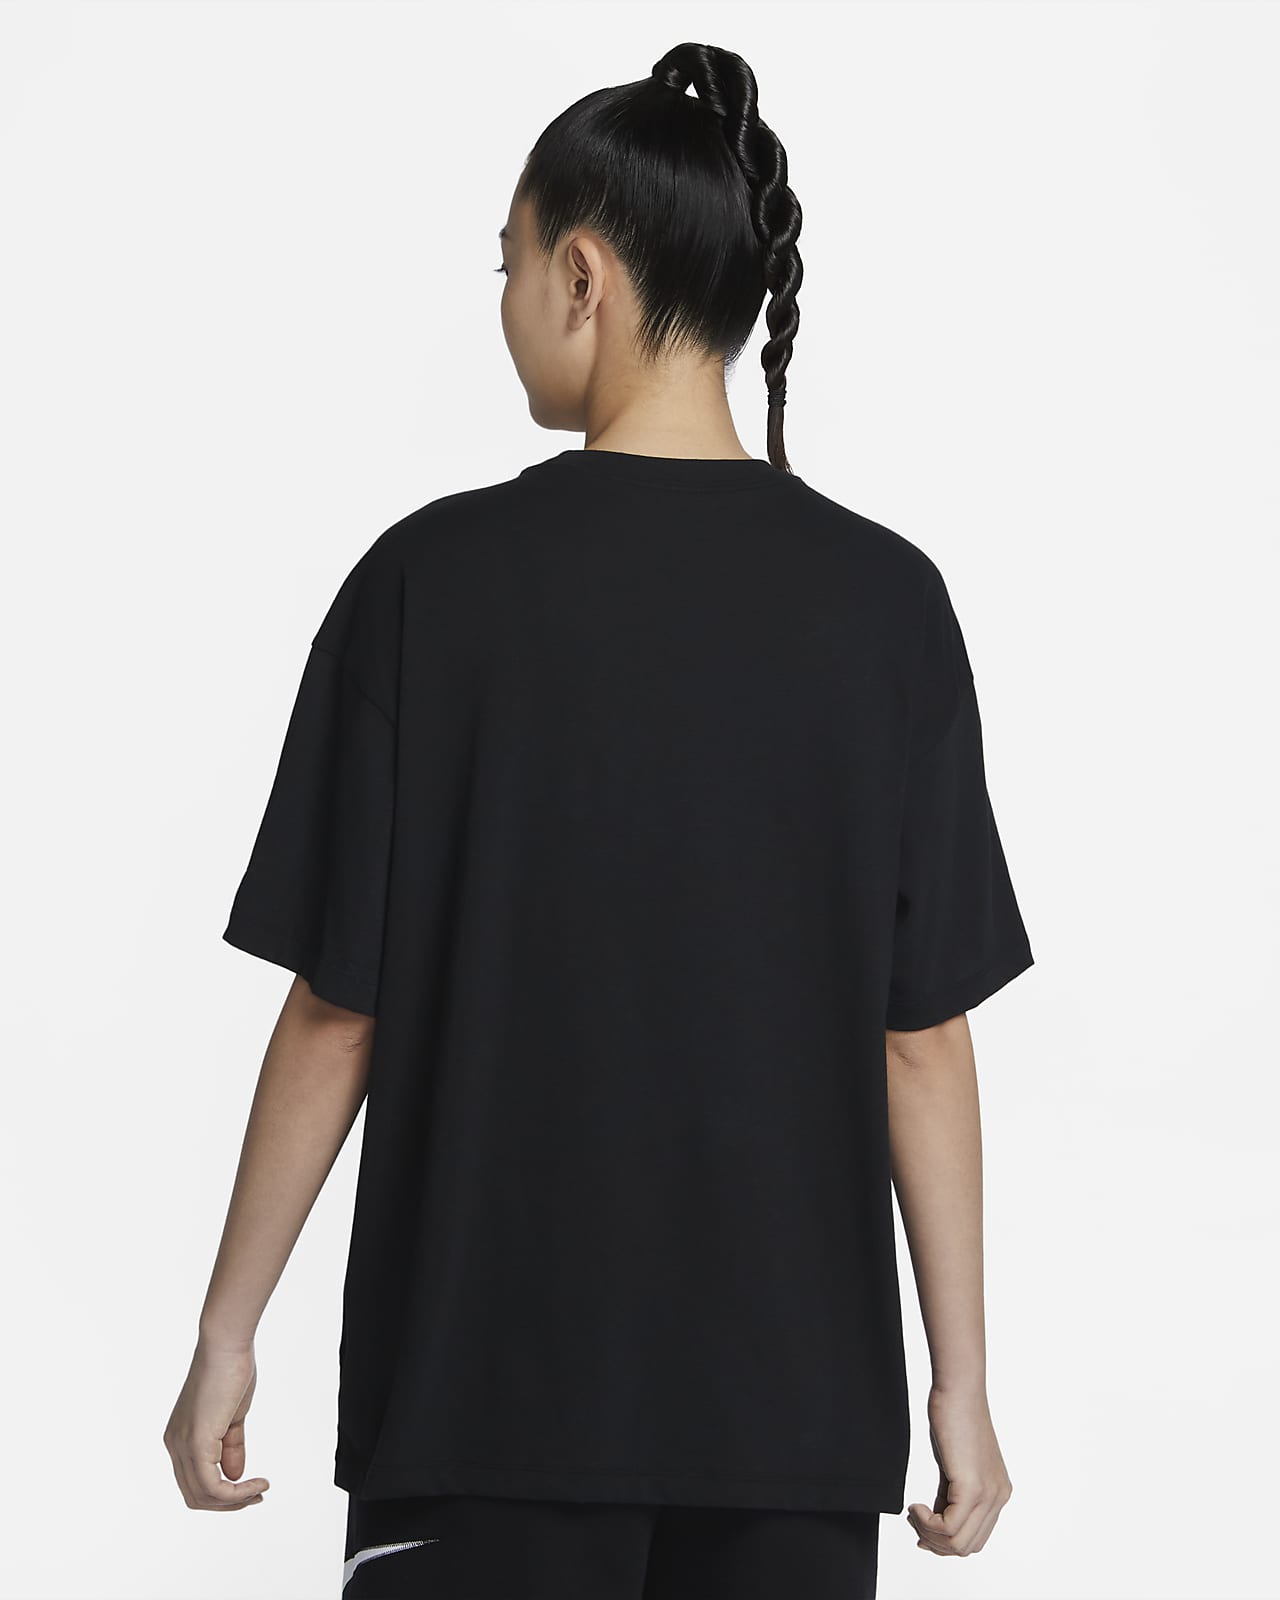 NIKE DRI-FIT Sサイズ 黒Tシャツ - 通販 - guianegro.com.br